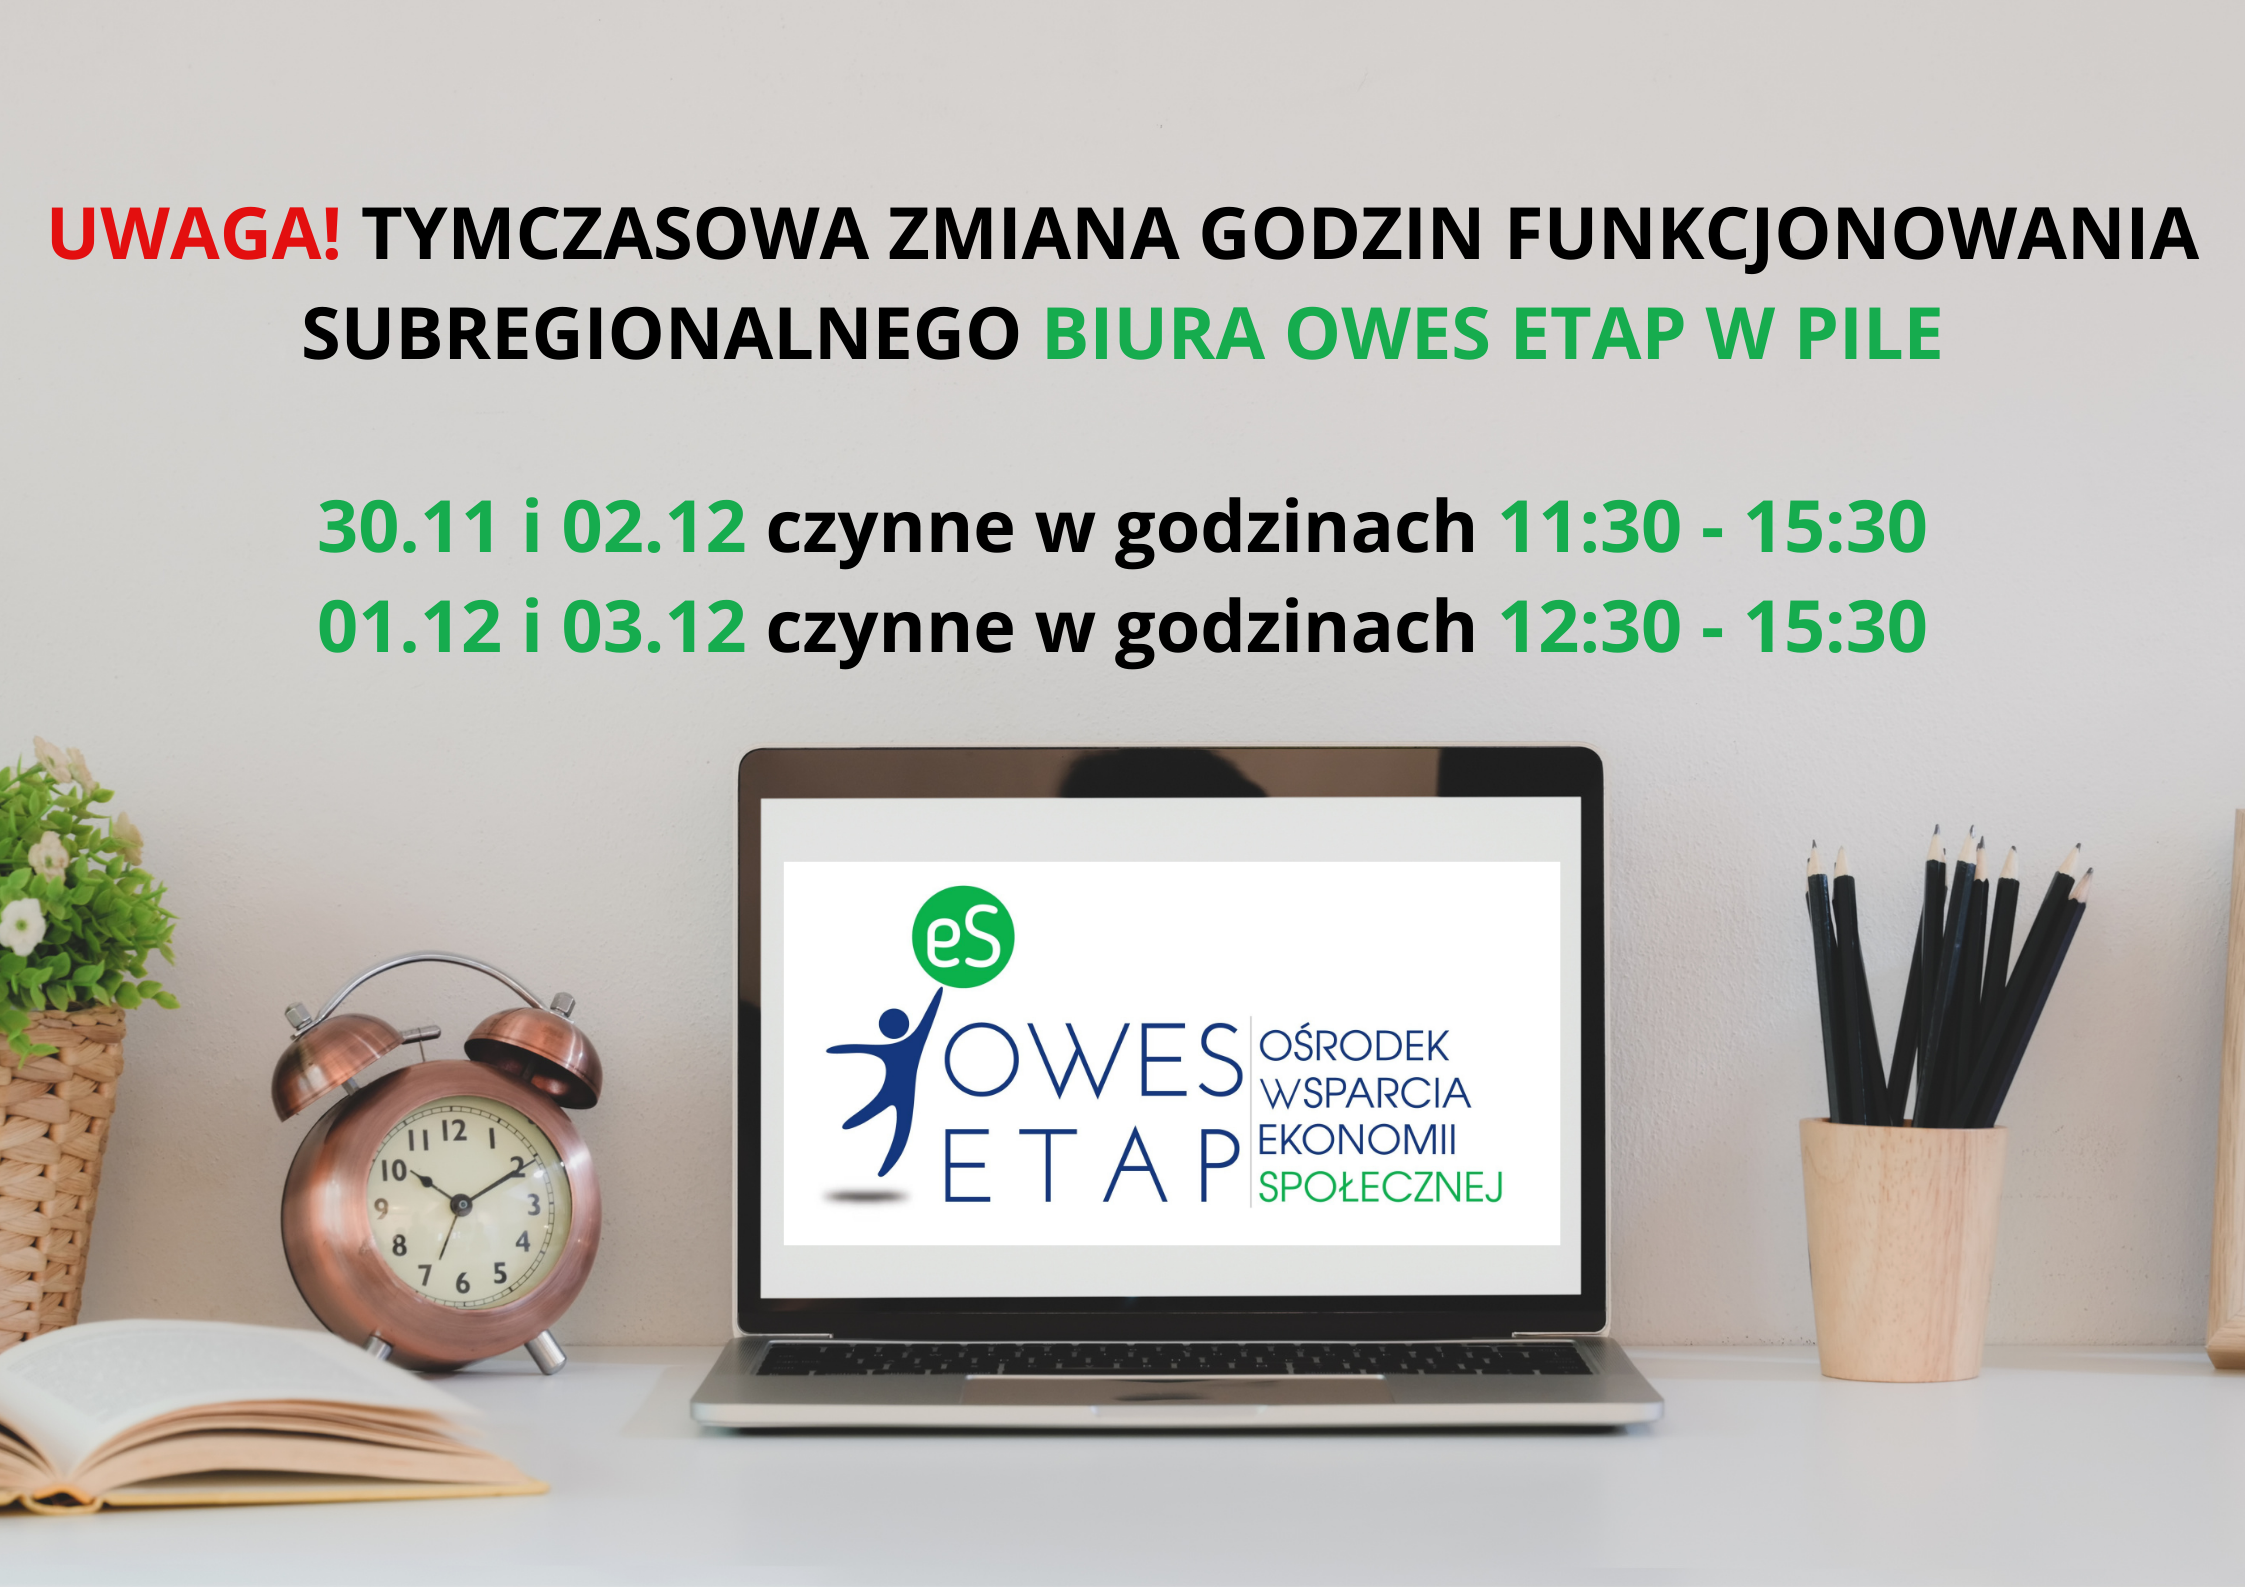 Grafika ilustruje informacje o zmianie godzin pracy biura OWES ETAP w Pile. W dniach 30.11 i 02.12 biuro jest czynne w godzinach 11:30 - 15:30. W dniach 01.12 i 03.12 jest czynne w godzinach 12:30 - 15:30.